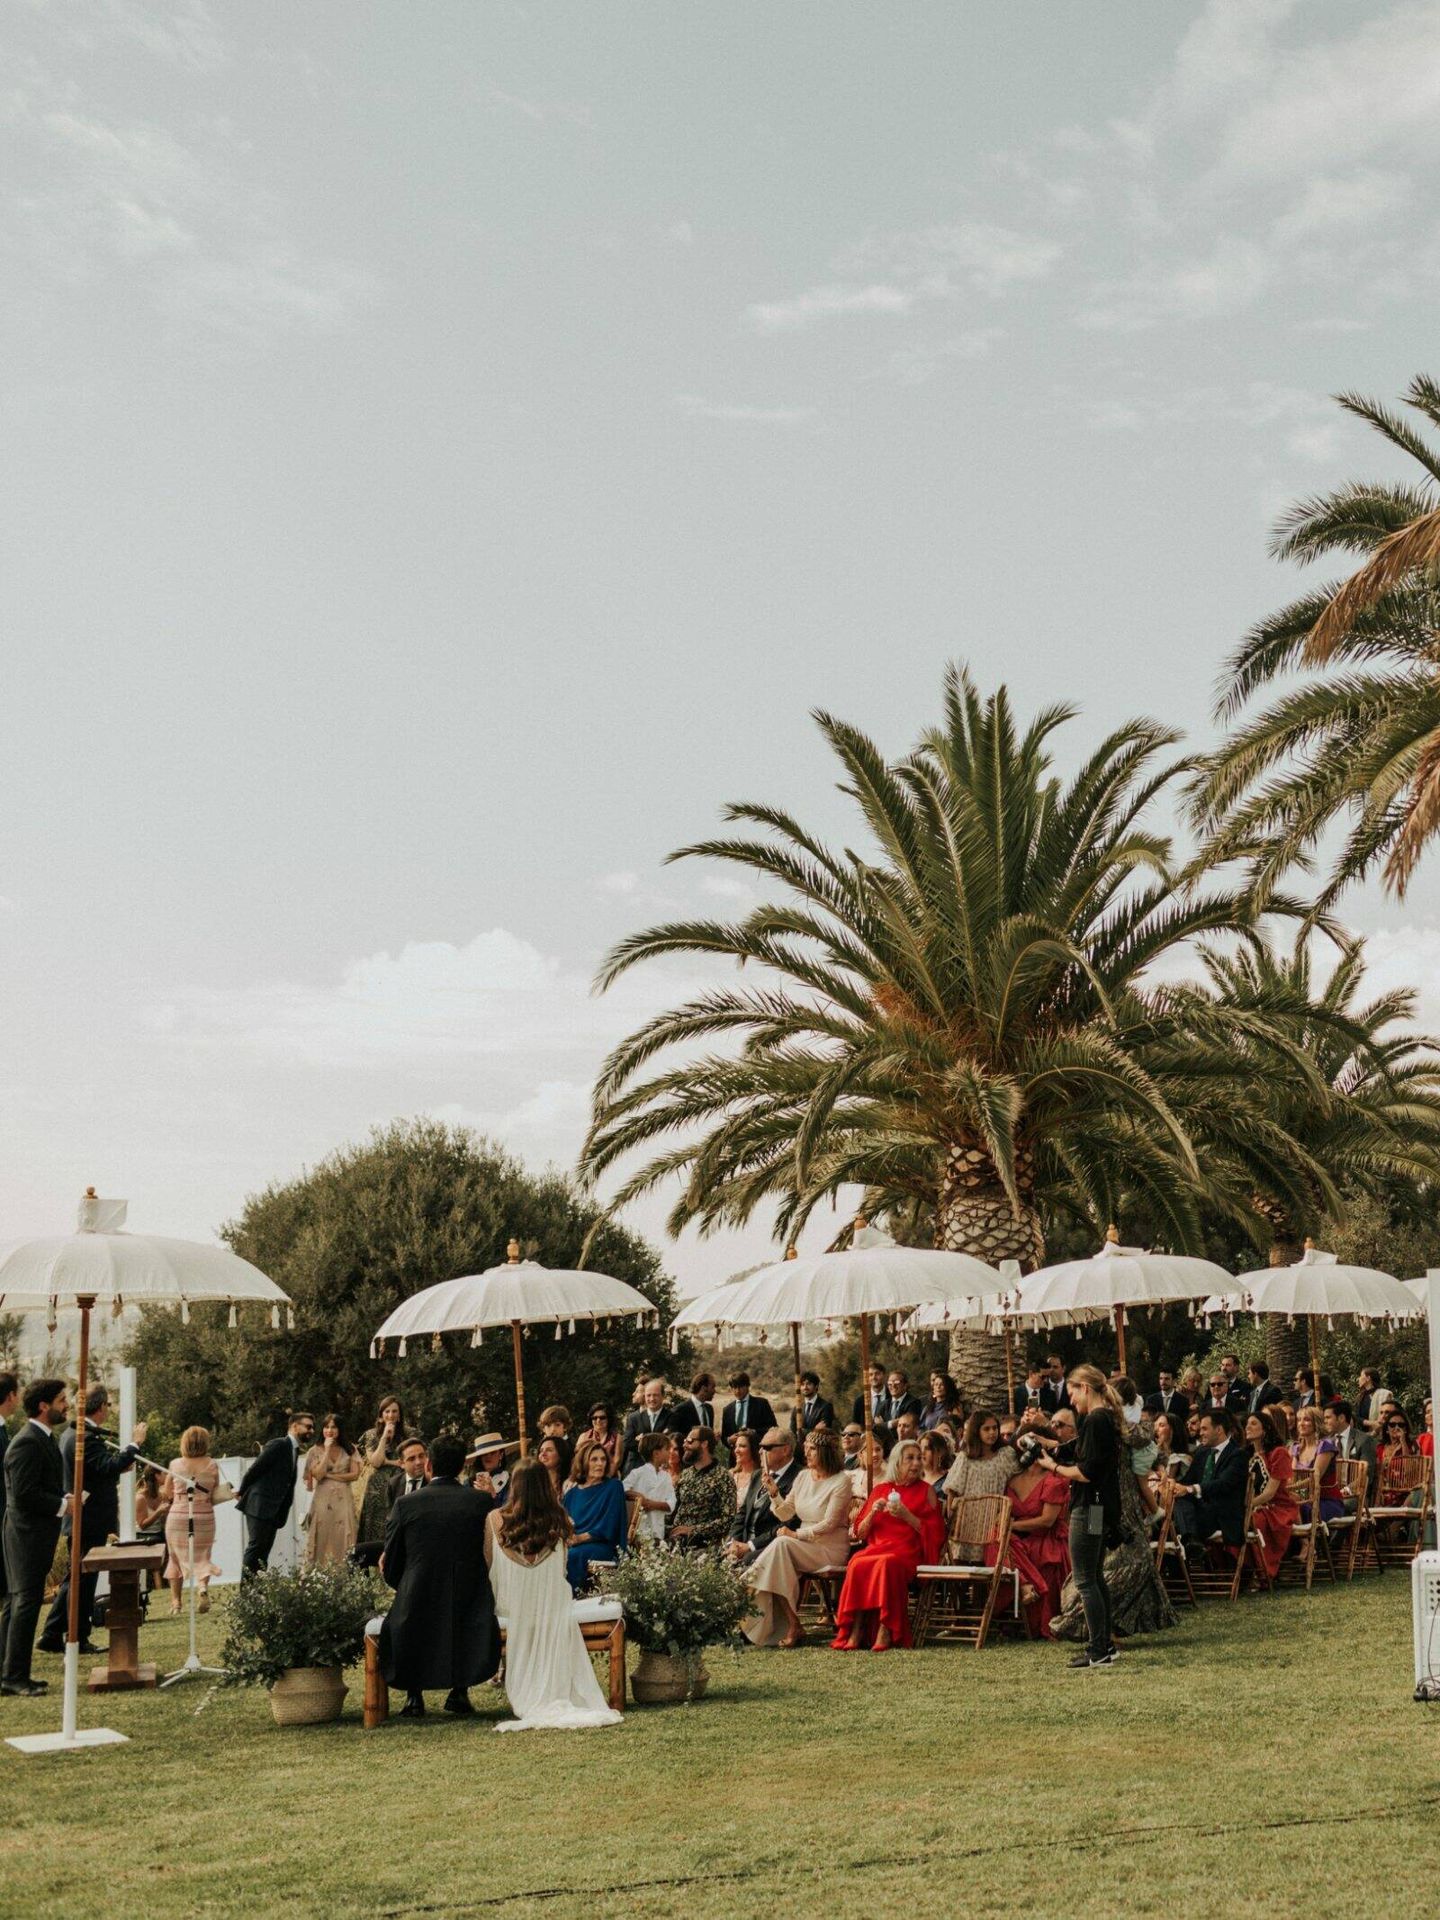 La boda de Begoña en Marbella. (Foto Lucía Jiménez)